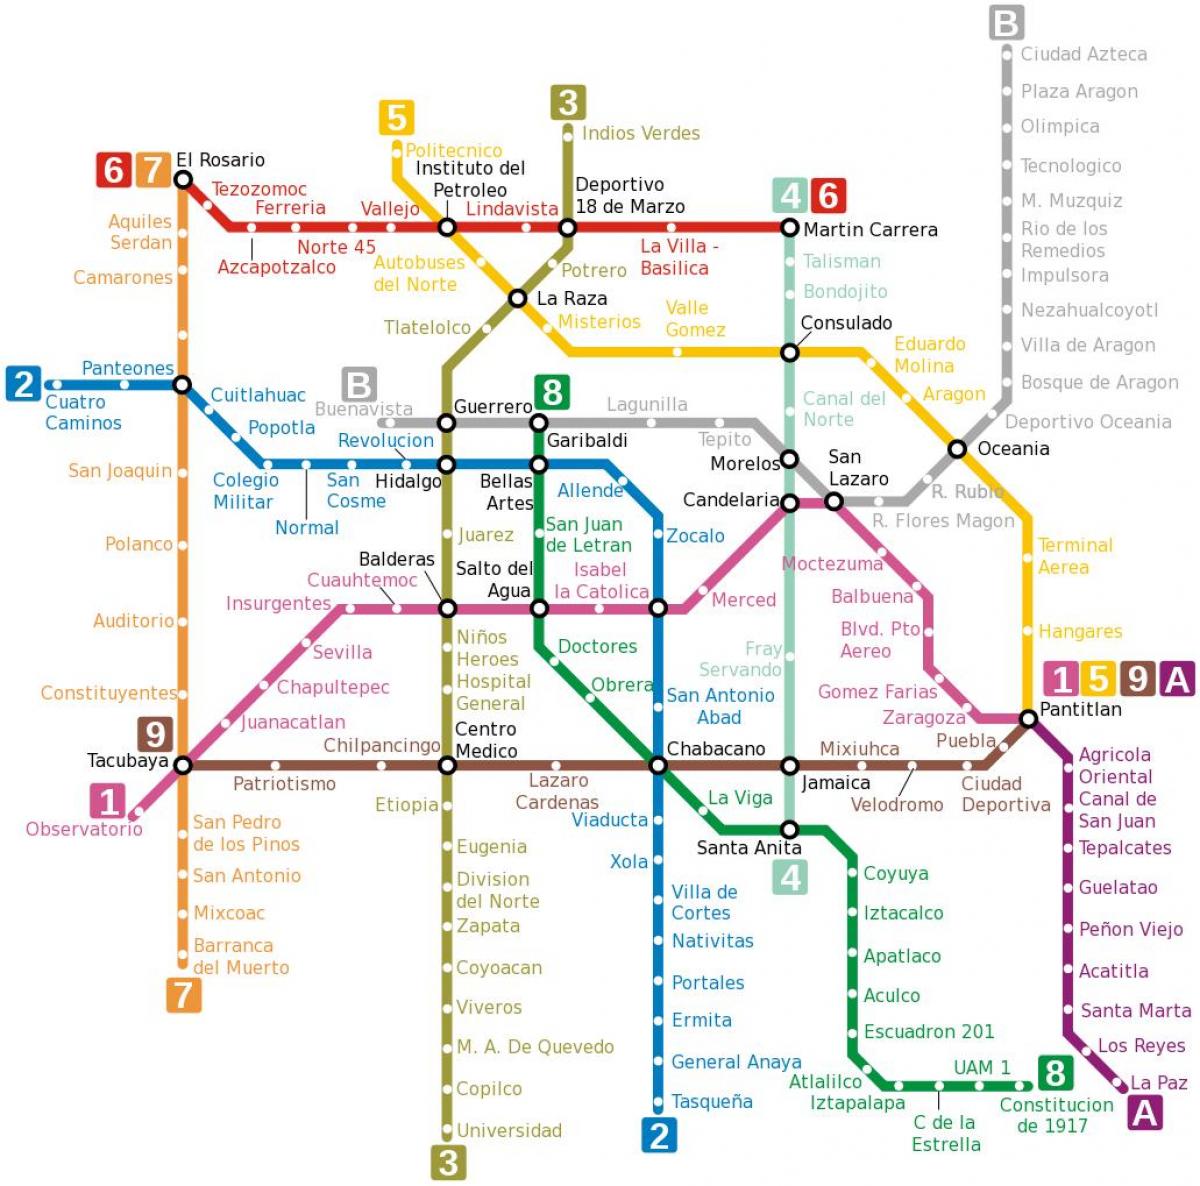 मेट्रो का नक्शा मेक्सिको